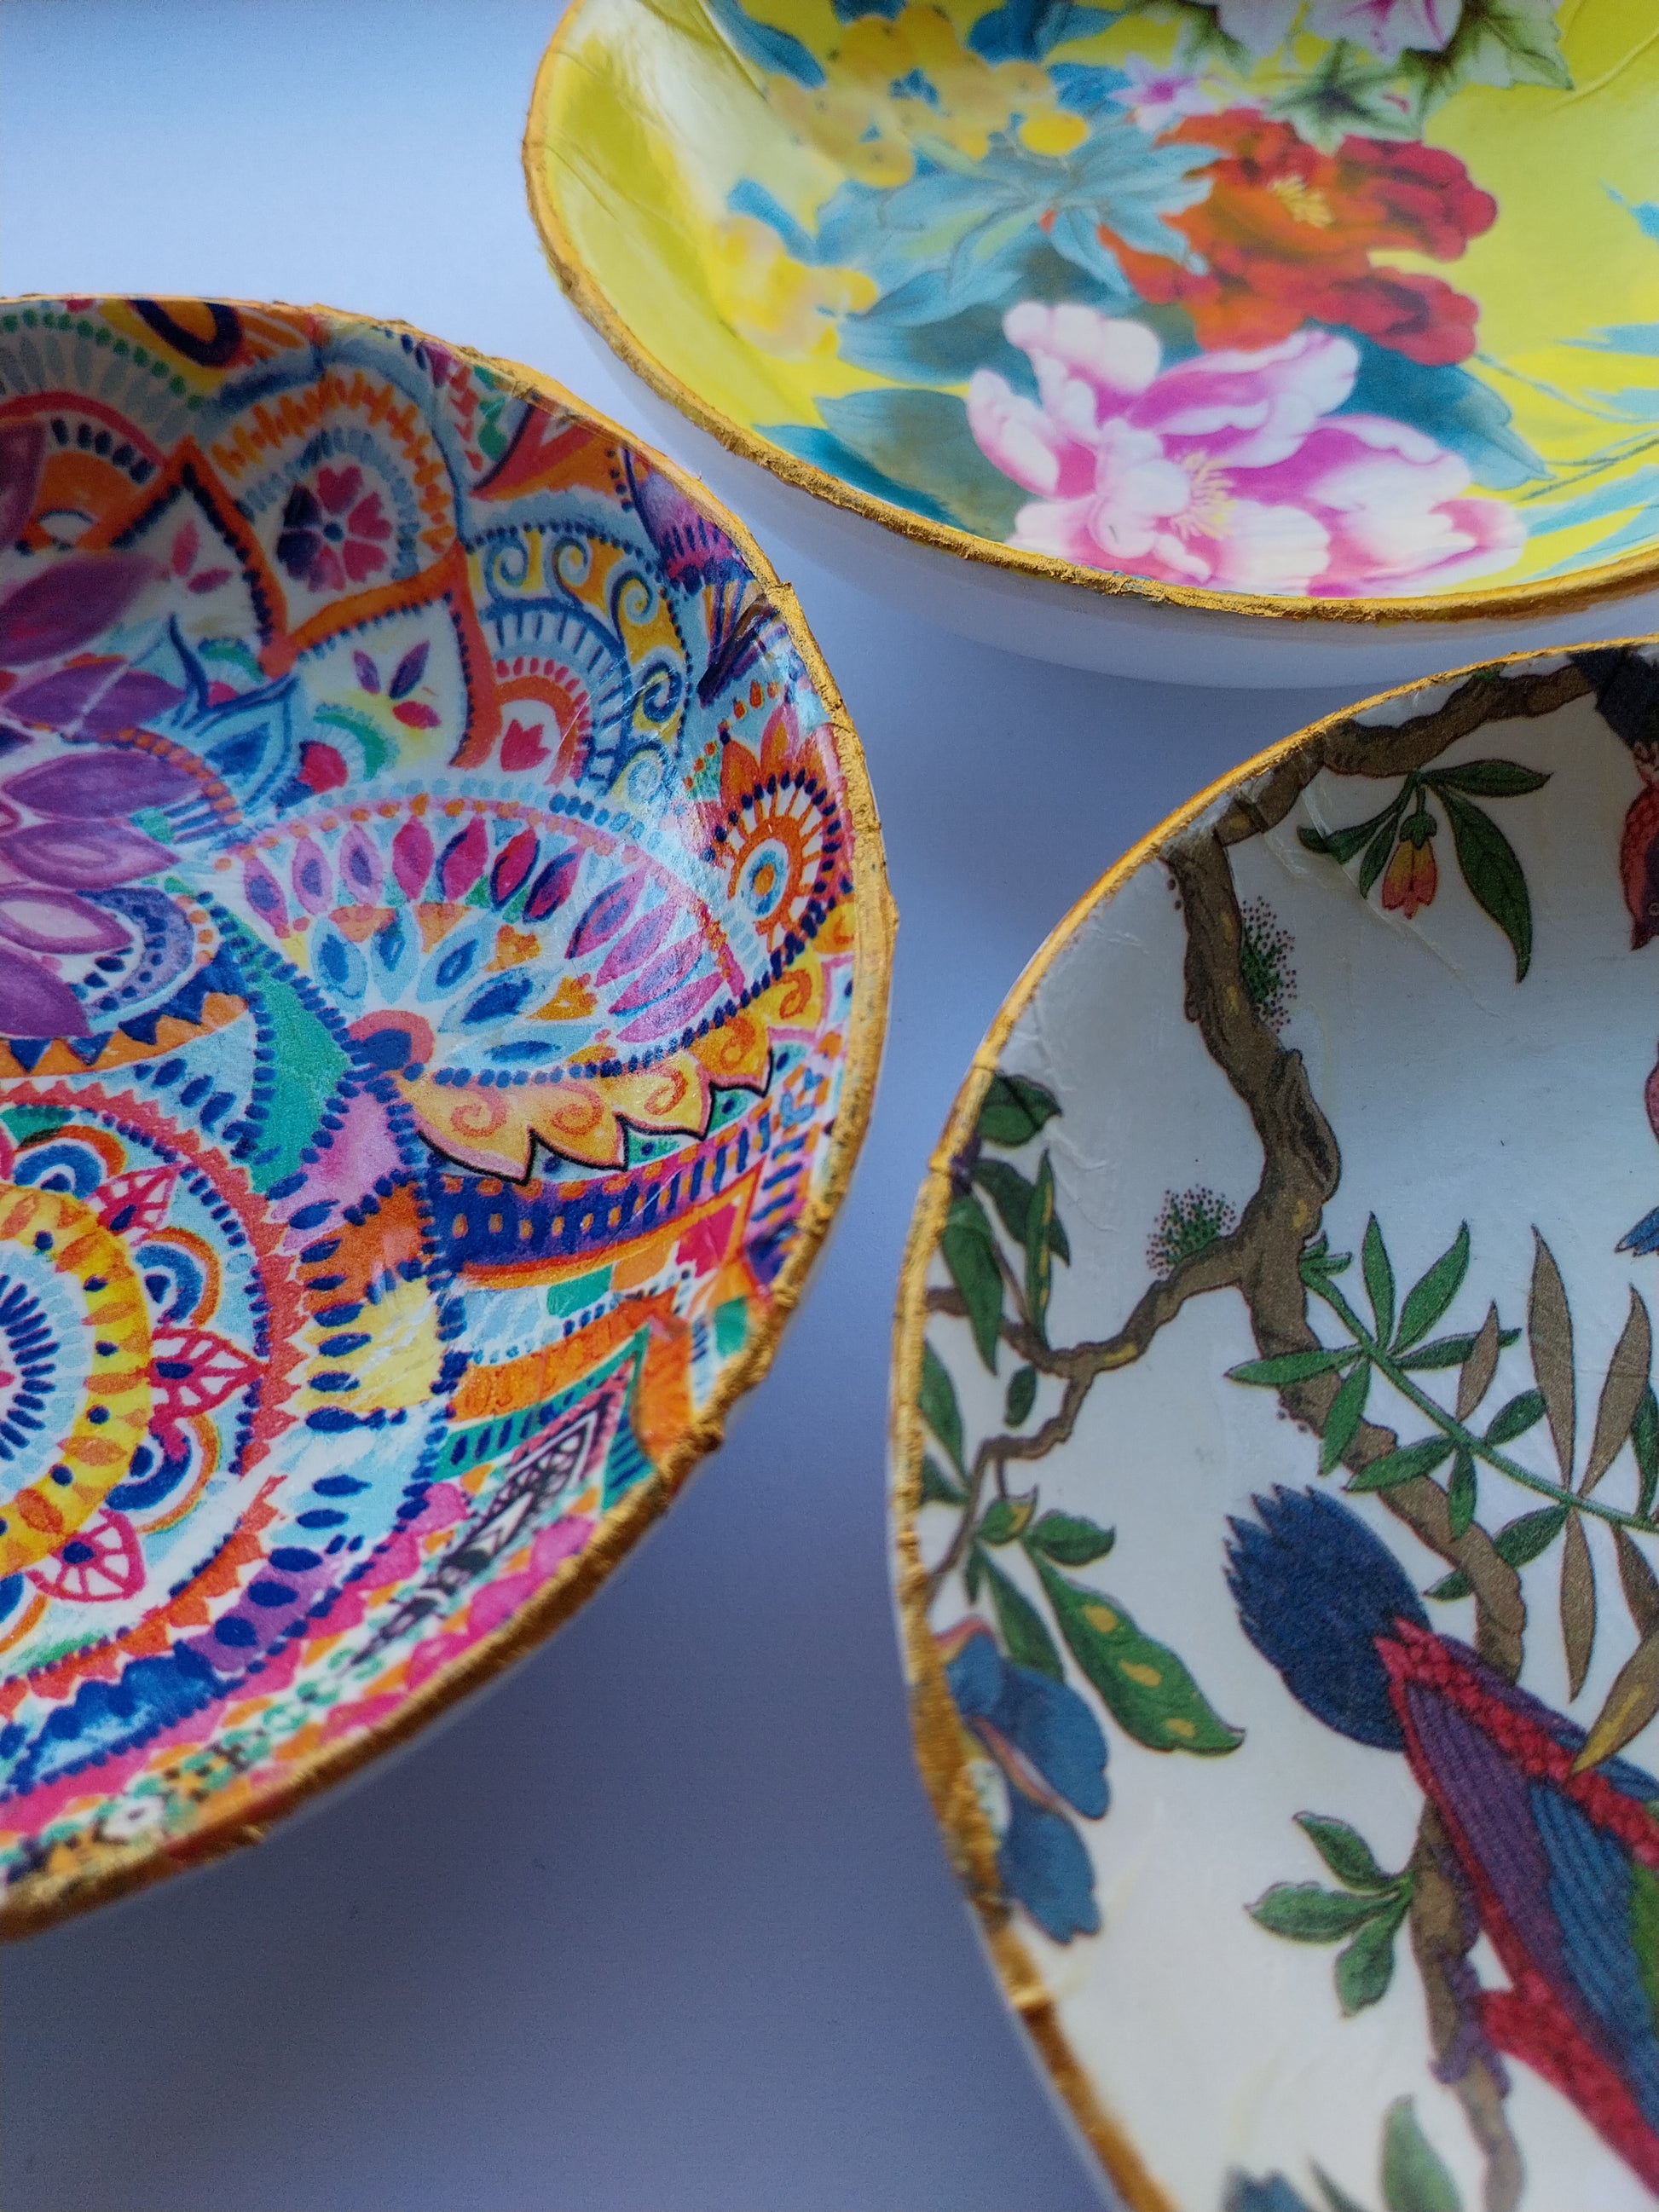 Mandala Pink & Gold Trinket Dish - design-eye-gallery